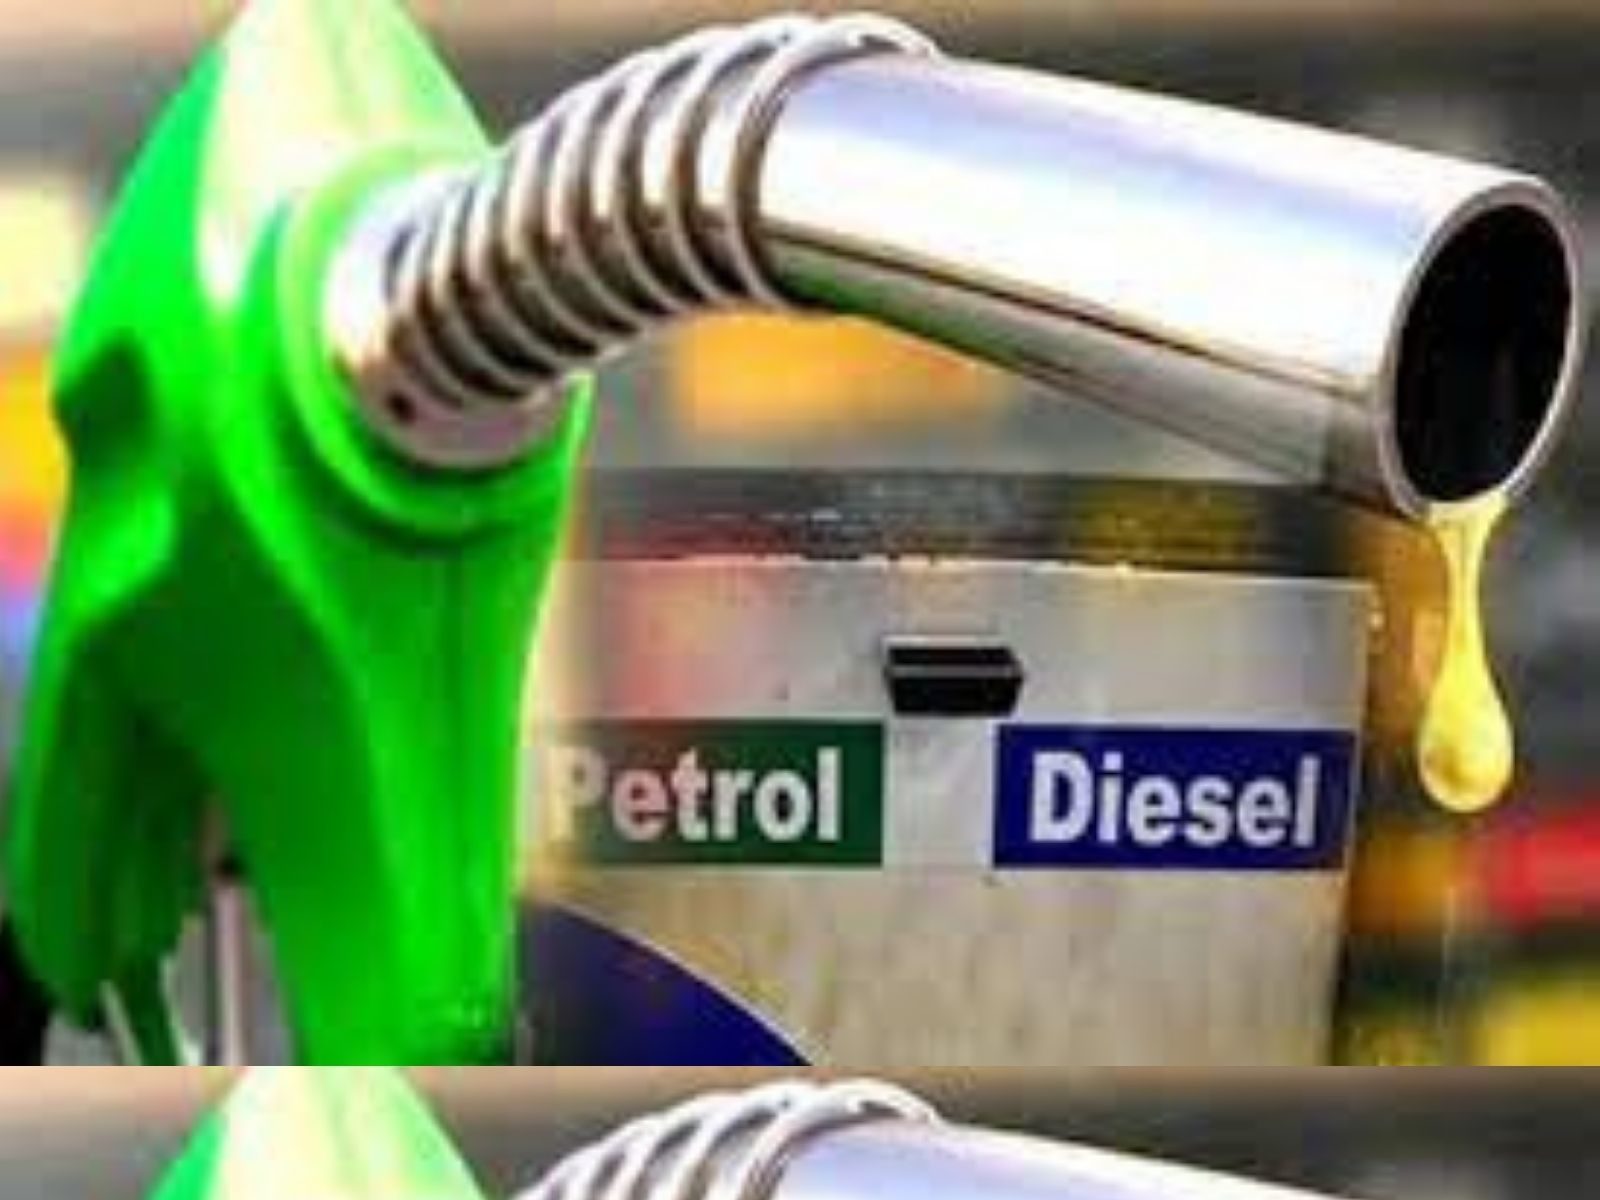  आज राष्ट्रीय राजधानी दिल्ली में पेट्रोल 98.61 रुपए प्रति लीटर औ डीजल 89.87 रुपए प्रति लीटर पहुंच गया है.